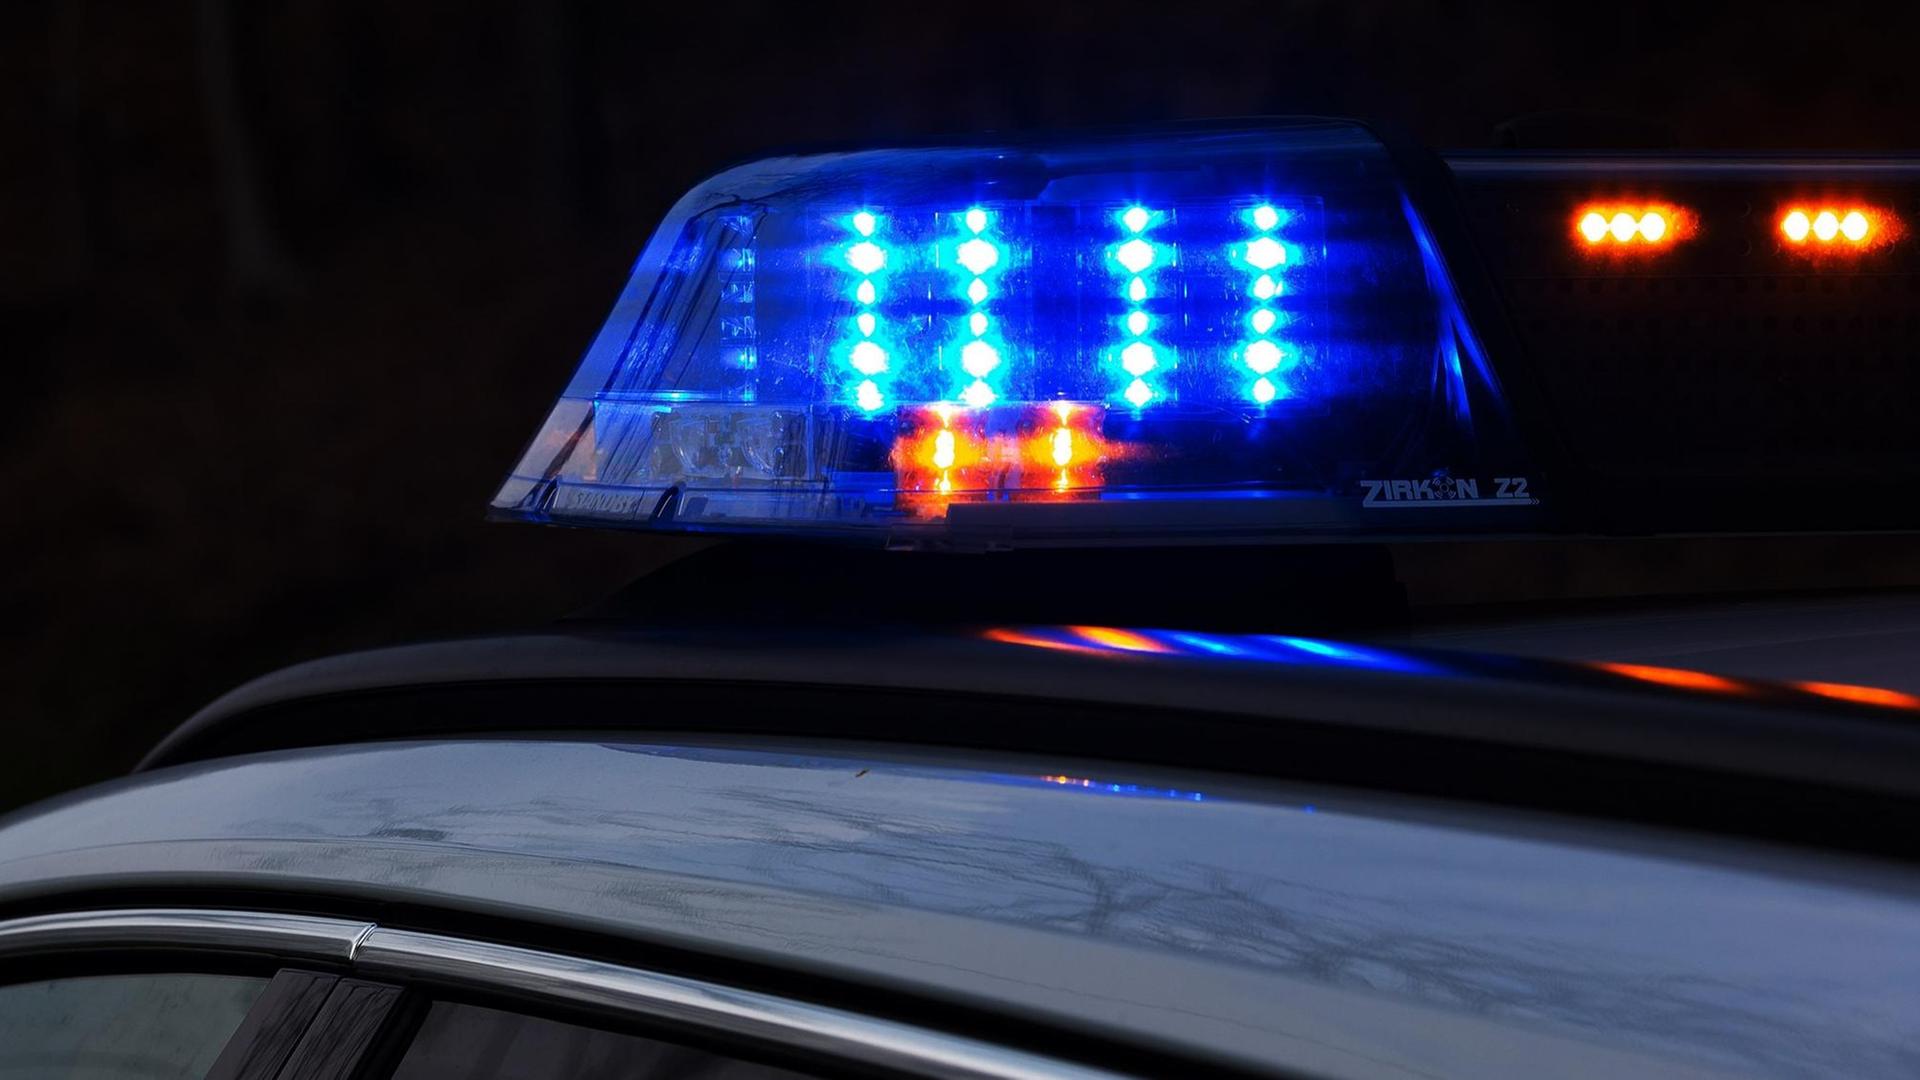 Ein Einsatzfahrzeug der Polizei in der Dunkelheit, mit Blaulicht